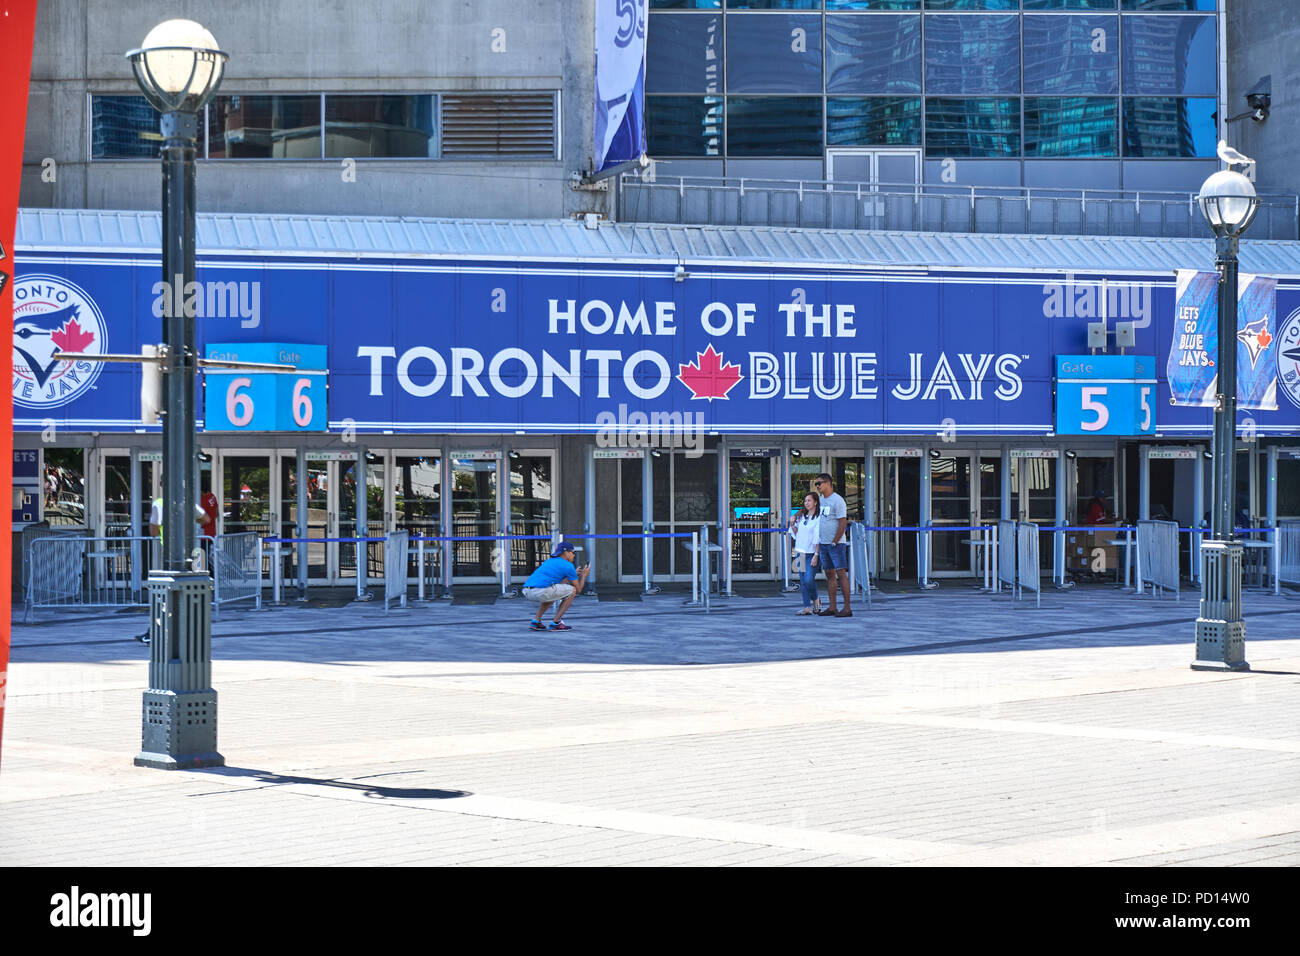 TORONTO, CANADA - 15 juillet 2018 : le logo des Blue Jays de Toronto. Les Blue Jays de Toronto sont une équipe professionnelle de baseball basé à Toronto, Ontario. Banque D'Images